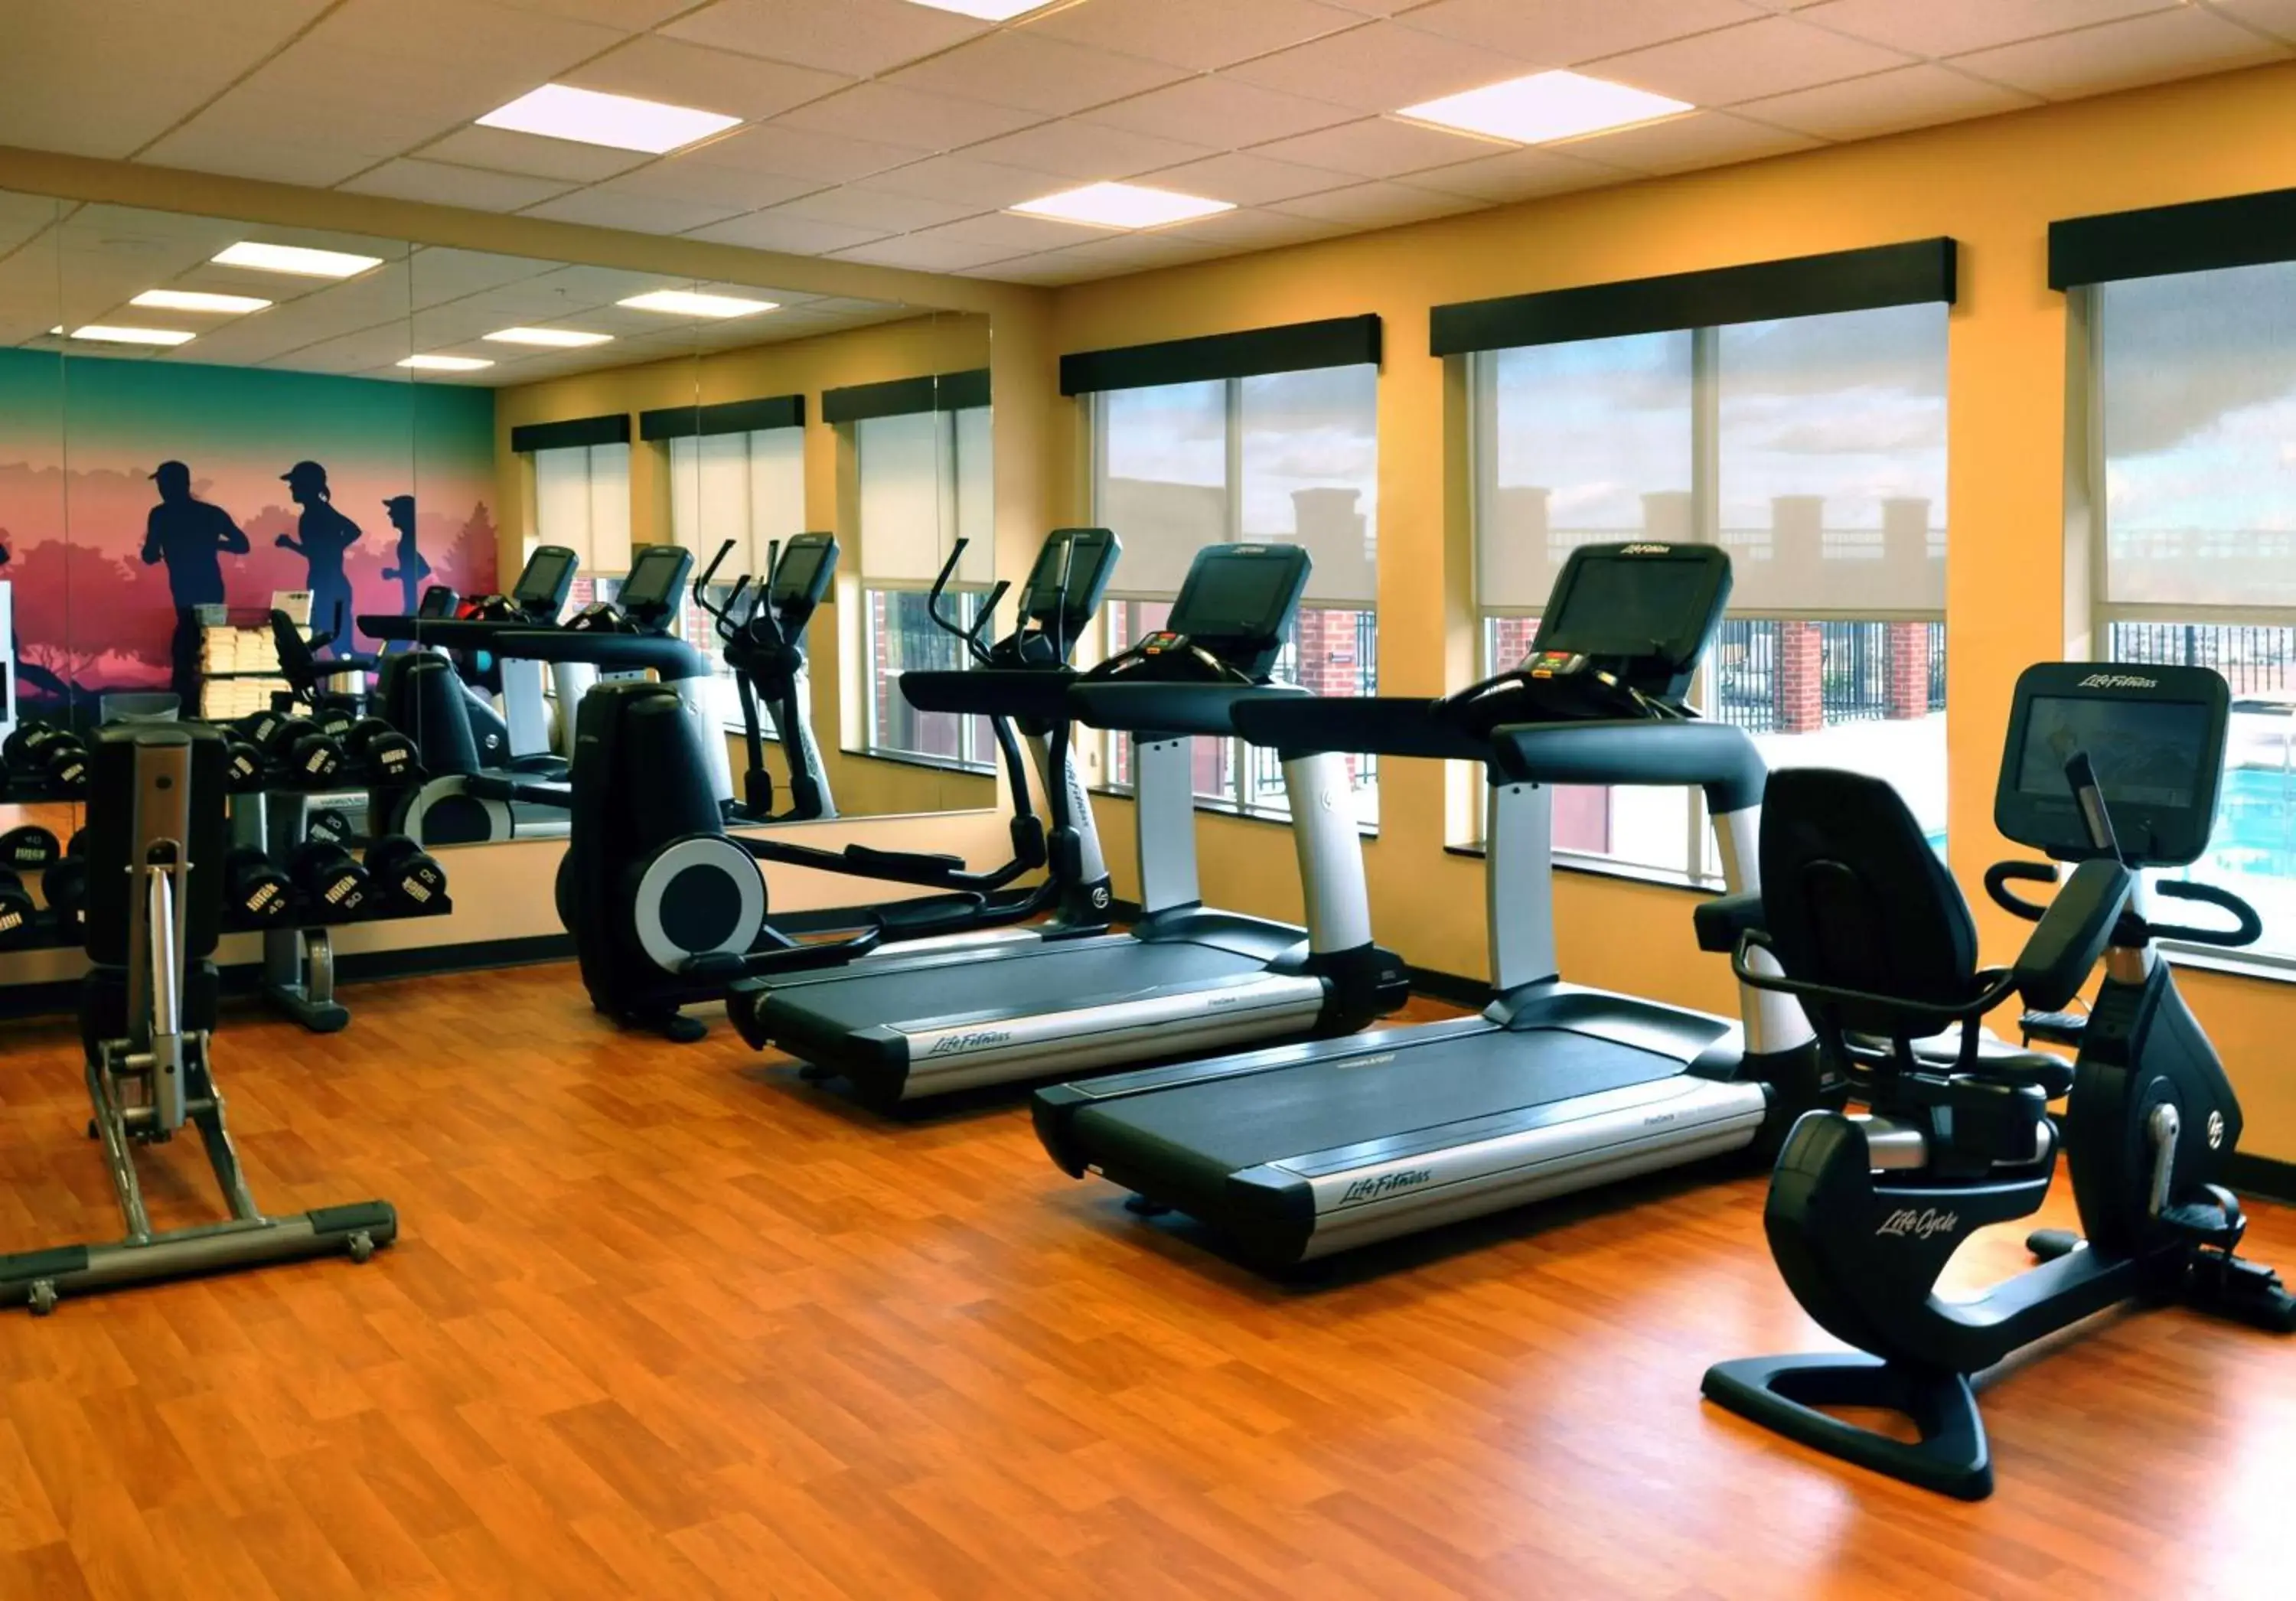 Fitness centre/facilities, Fitness Center/Facilities in Hyatt Place Augusta